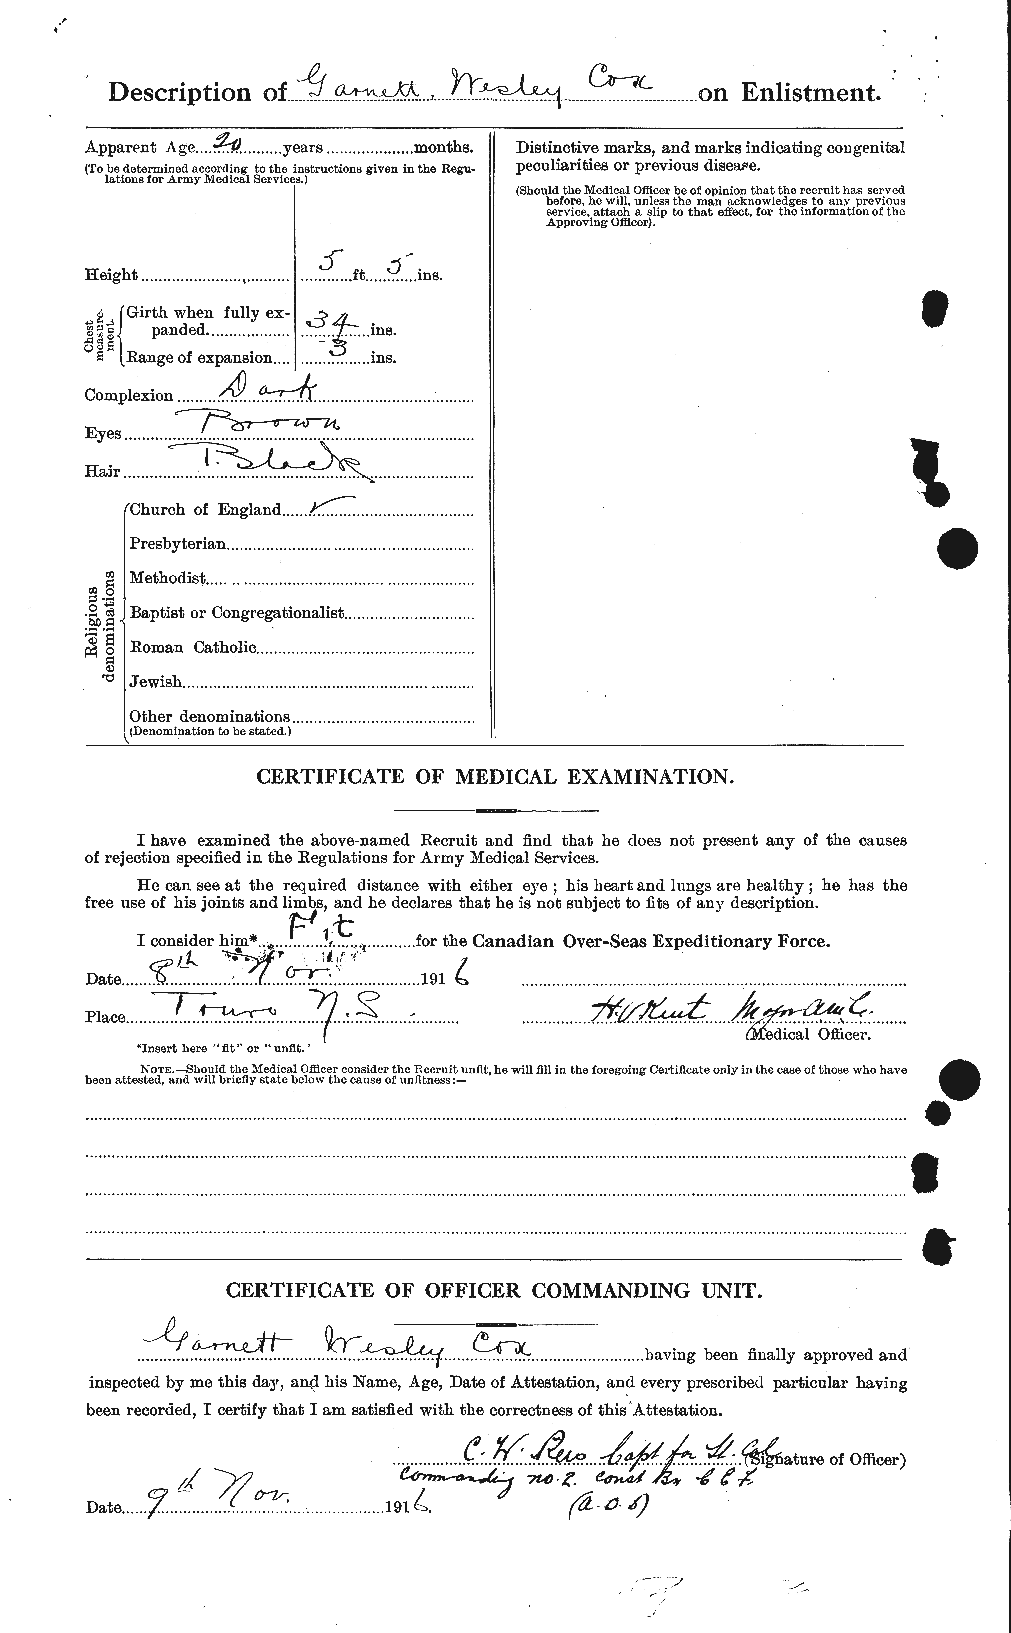 Dossiers du Personnel de la Première Guerre mondiale - CEC 060210b